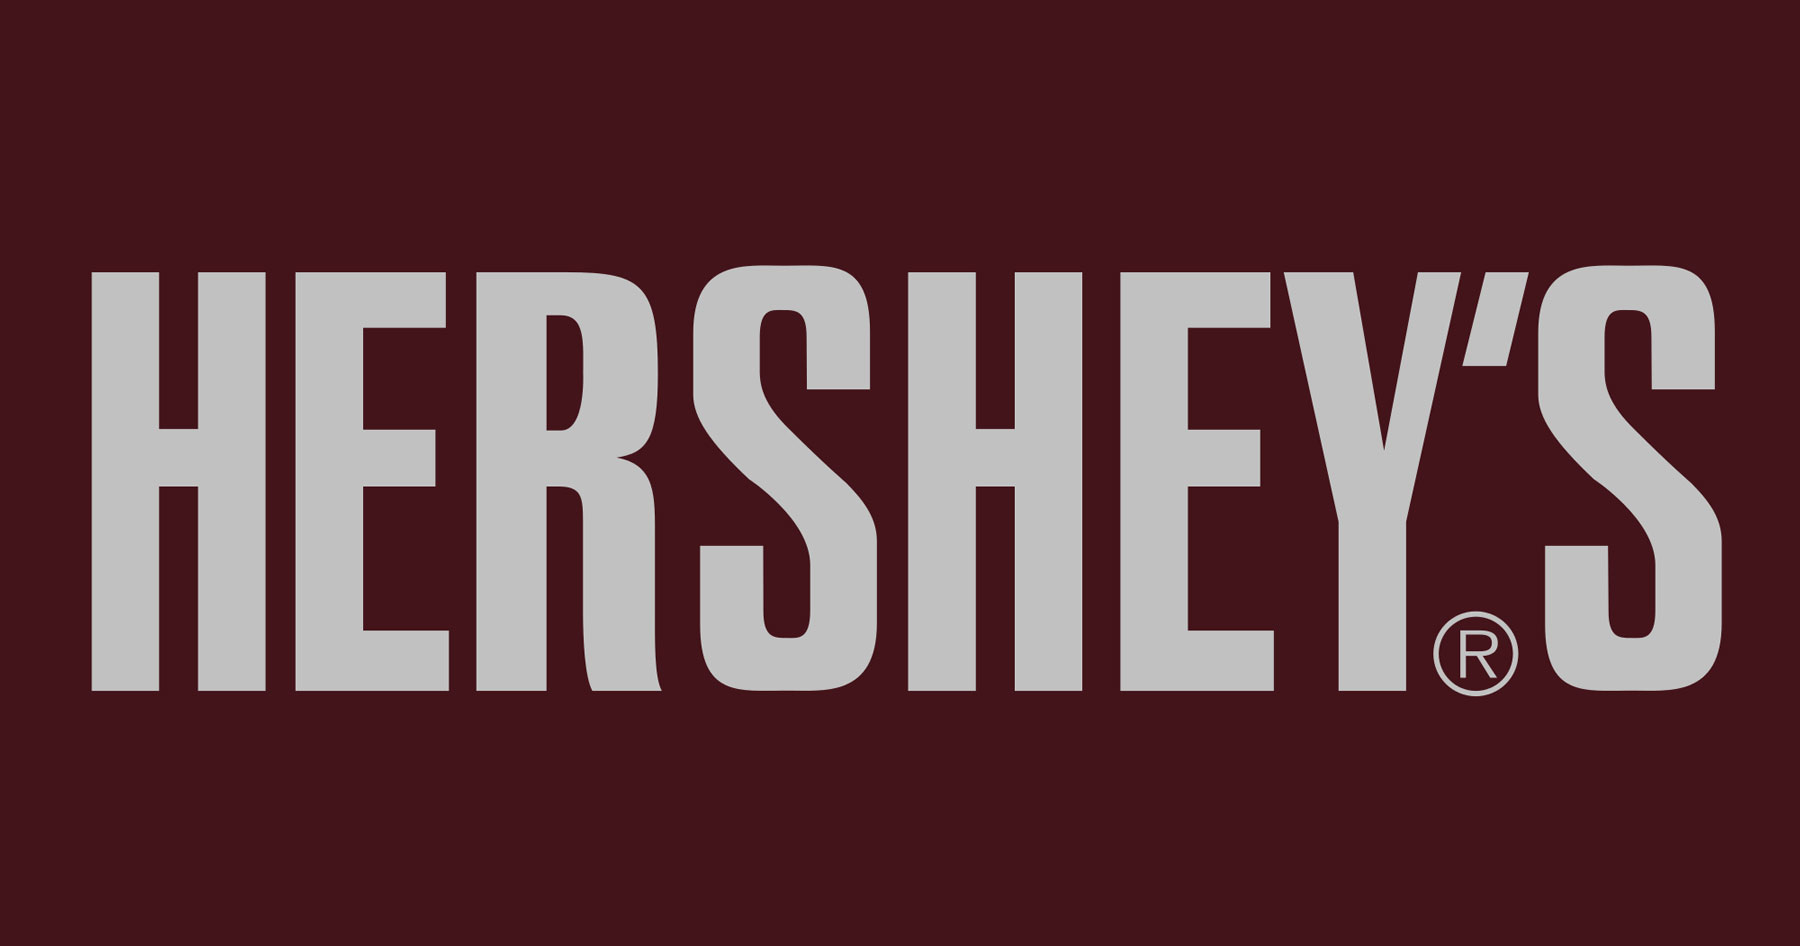 Hershey's logotype